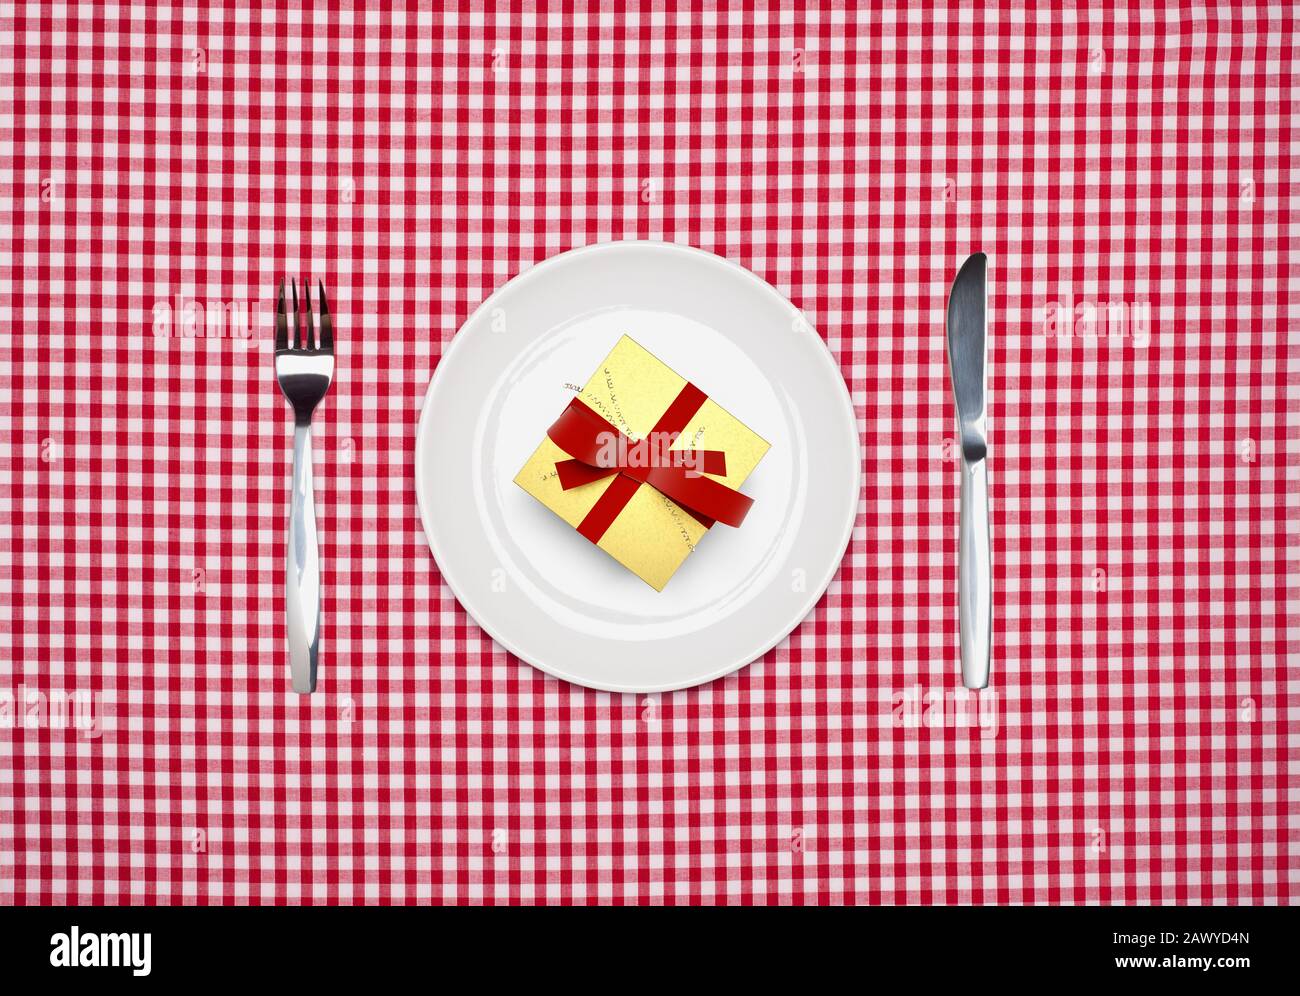 Überraschungsmahlzeit, ein Geschenk verpackt auf einem runden weißen Teller mit Messer und Gabel von oben auf einem roten Gingham Tischtuch Stockfoto